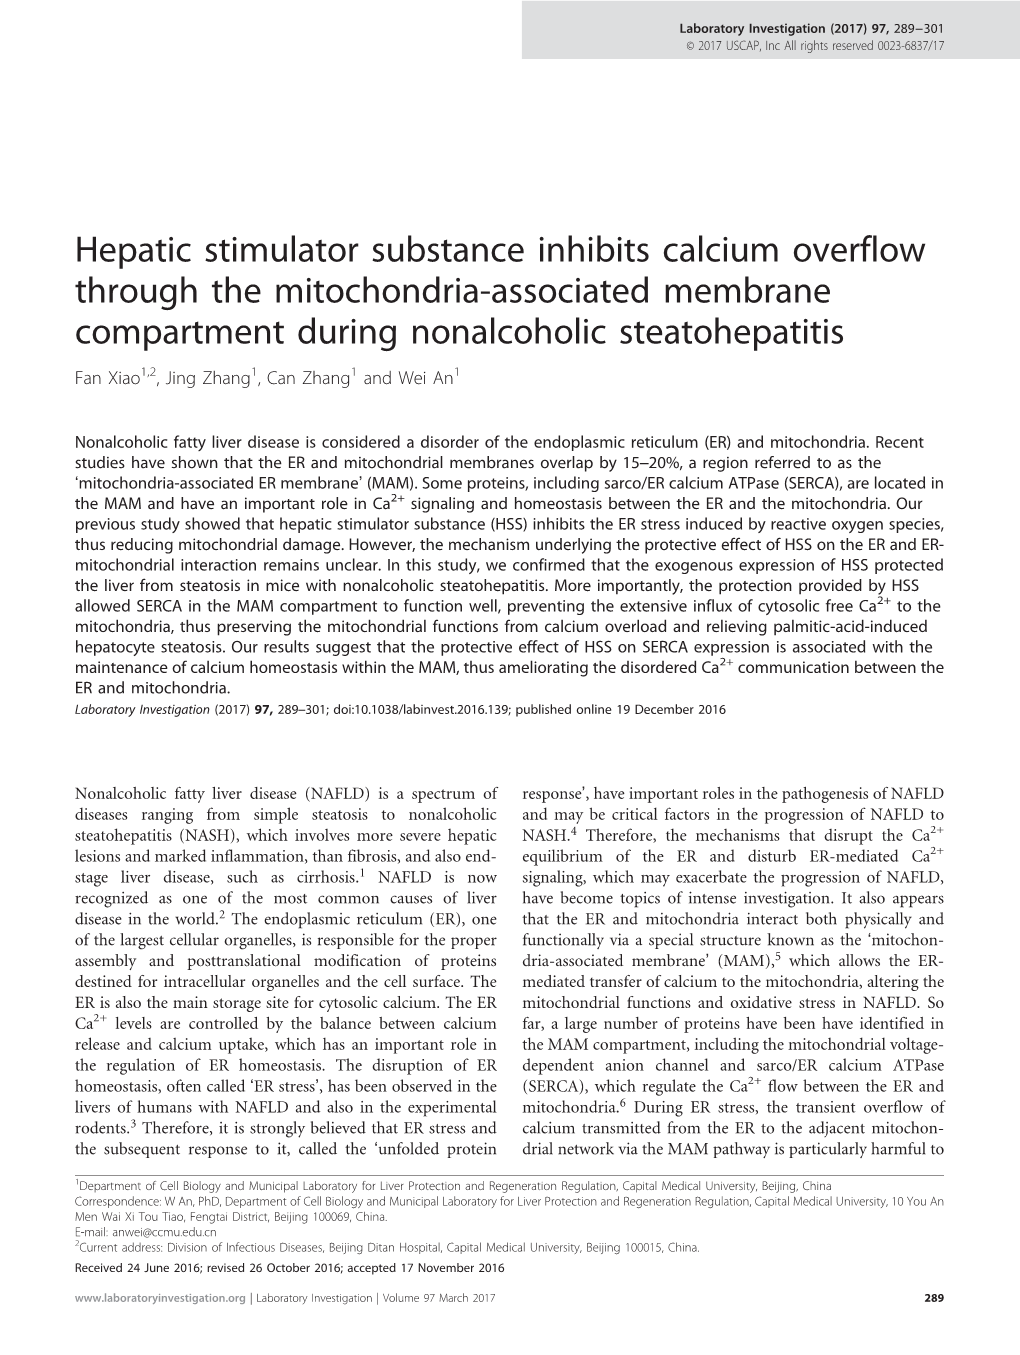 Hepatic Stimulator Substance Inhibits Calcium Overflow Through The